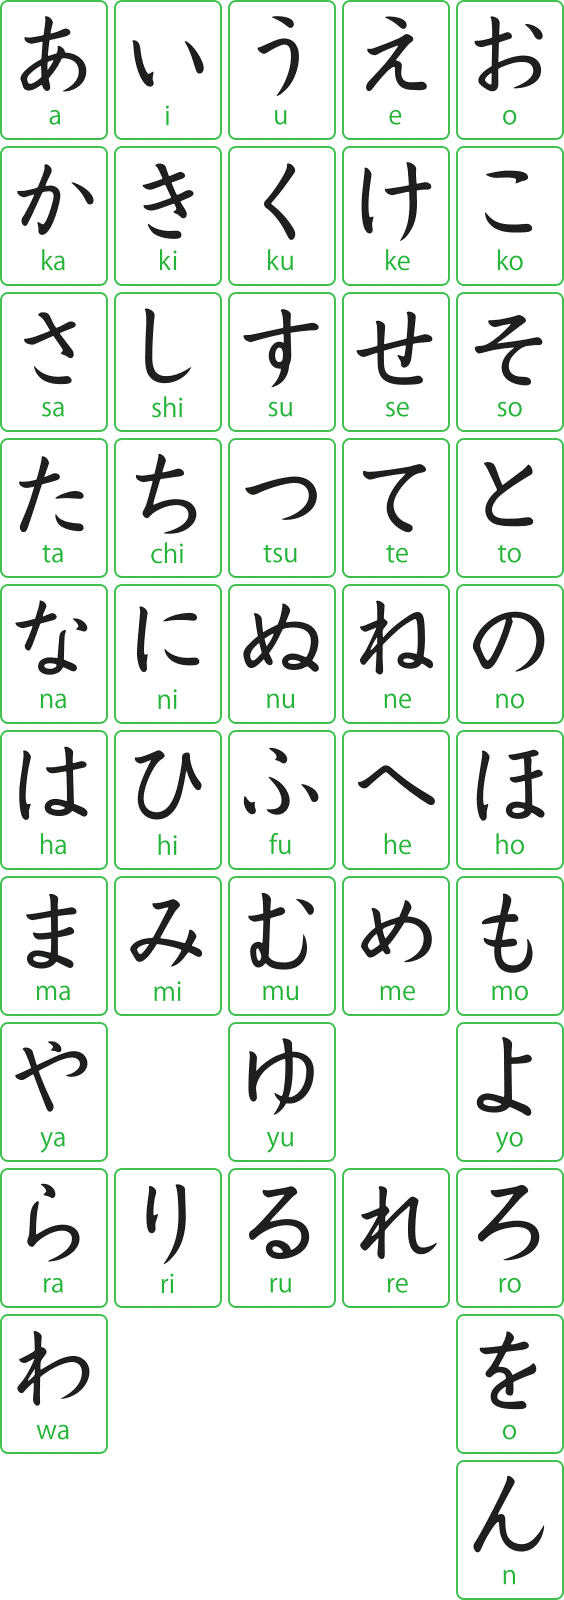 3 bảng chữ cái tiếng Nhật